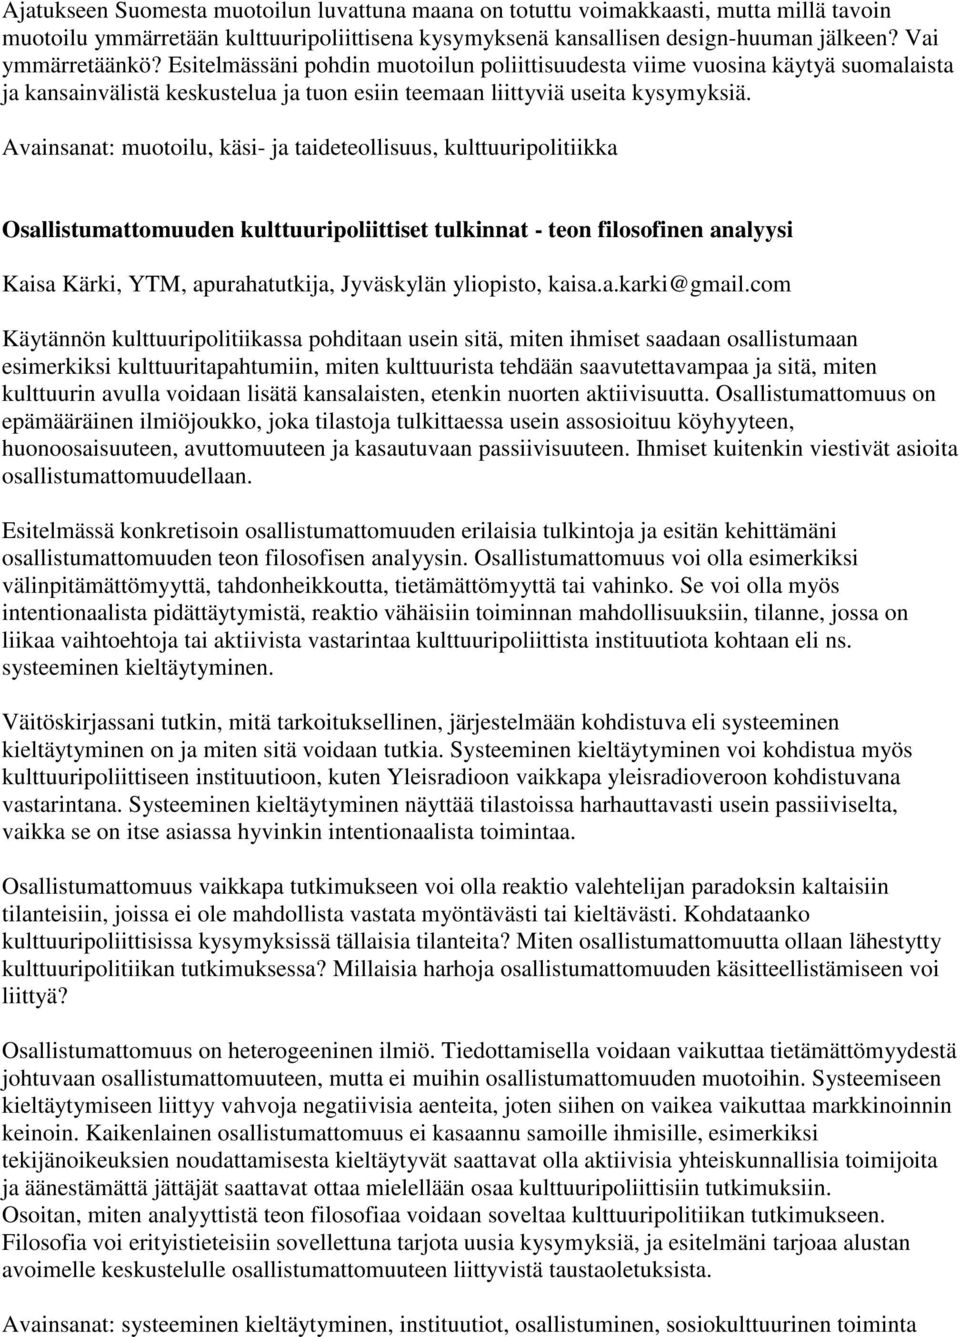 Avainsanat: muotoilu, käsi- ja taideteollisuus, kulttuuripolitiikka Osallistumattomuuden kulttuuripoliittiset tulkinnat - teon filosofinen analyysi Kaisa Kärki, YTM, apurahatutkija, Jyväskylän